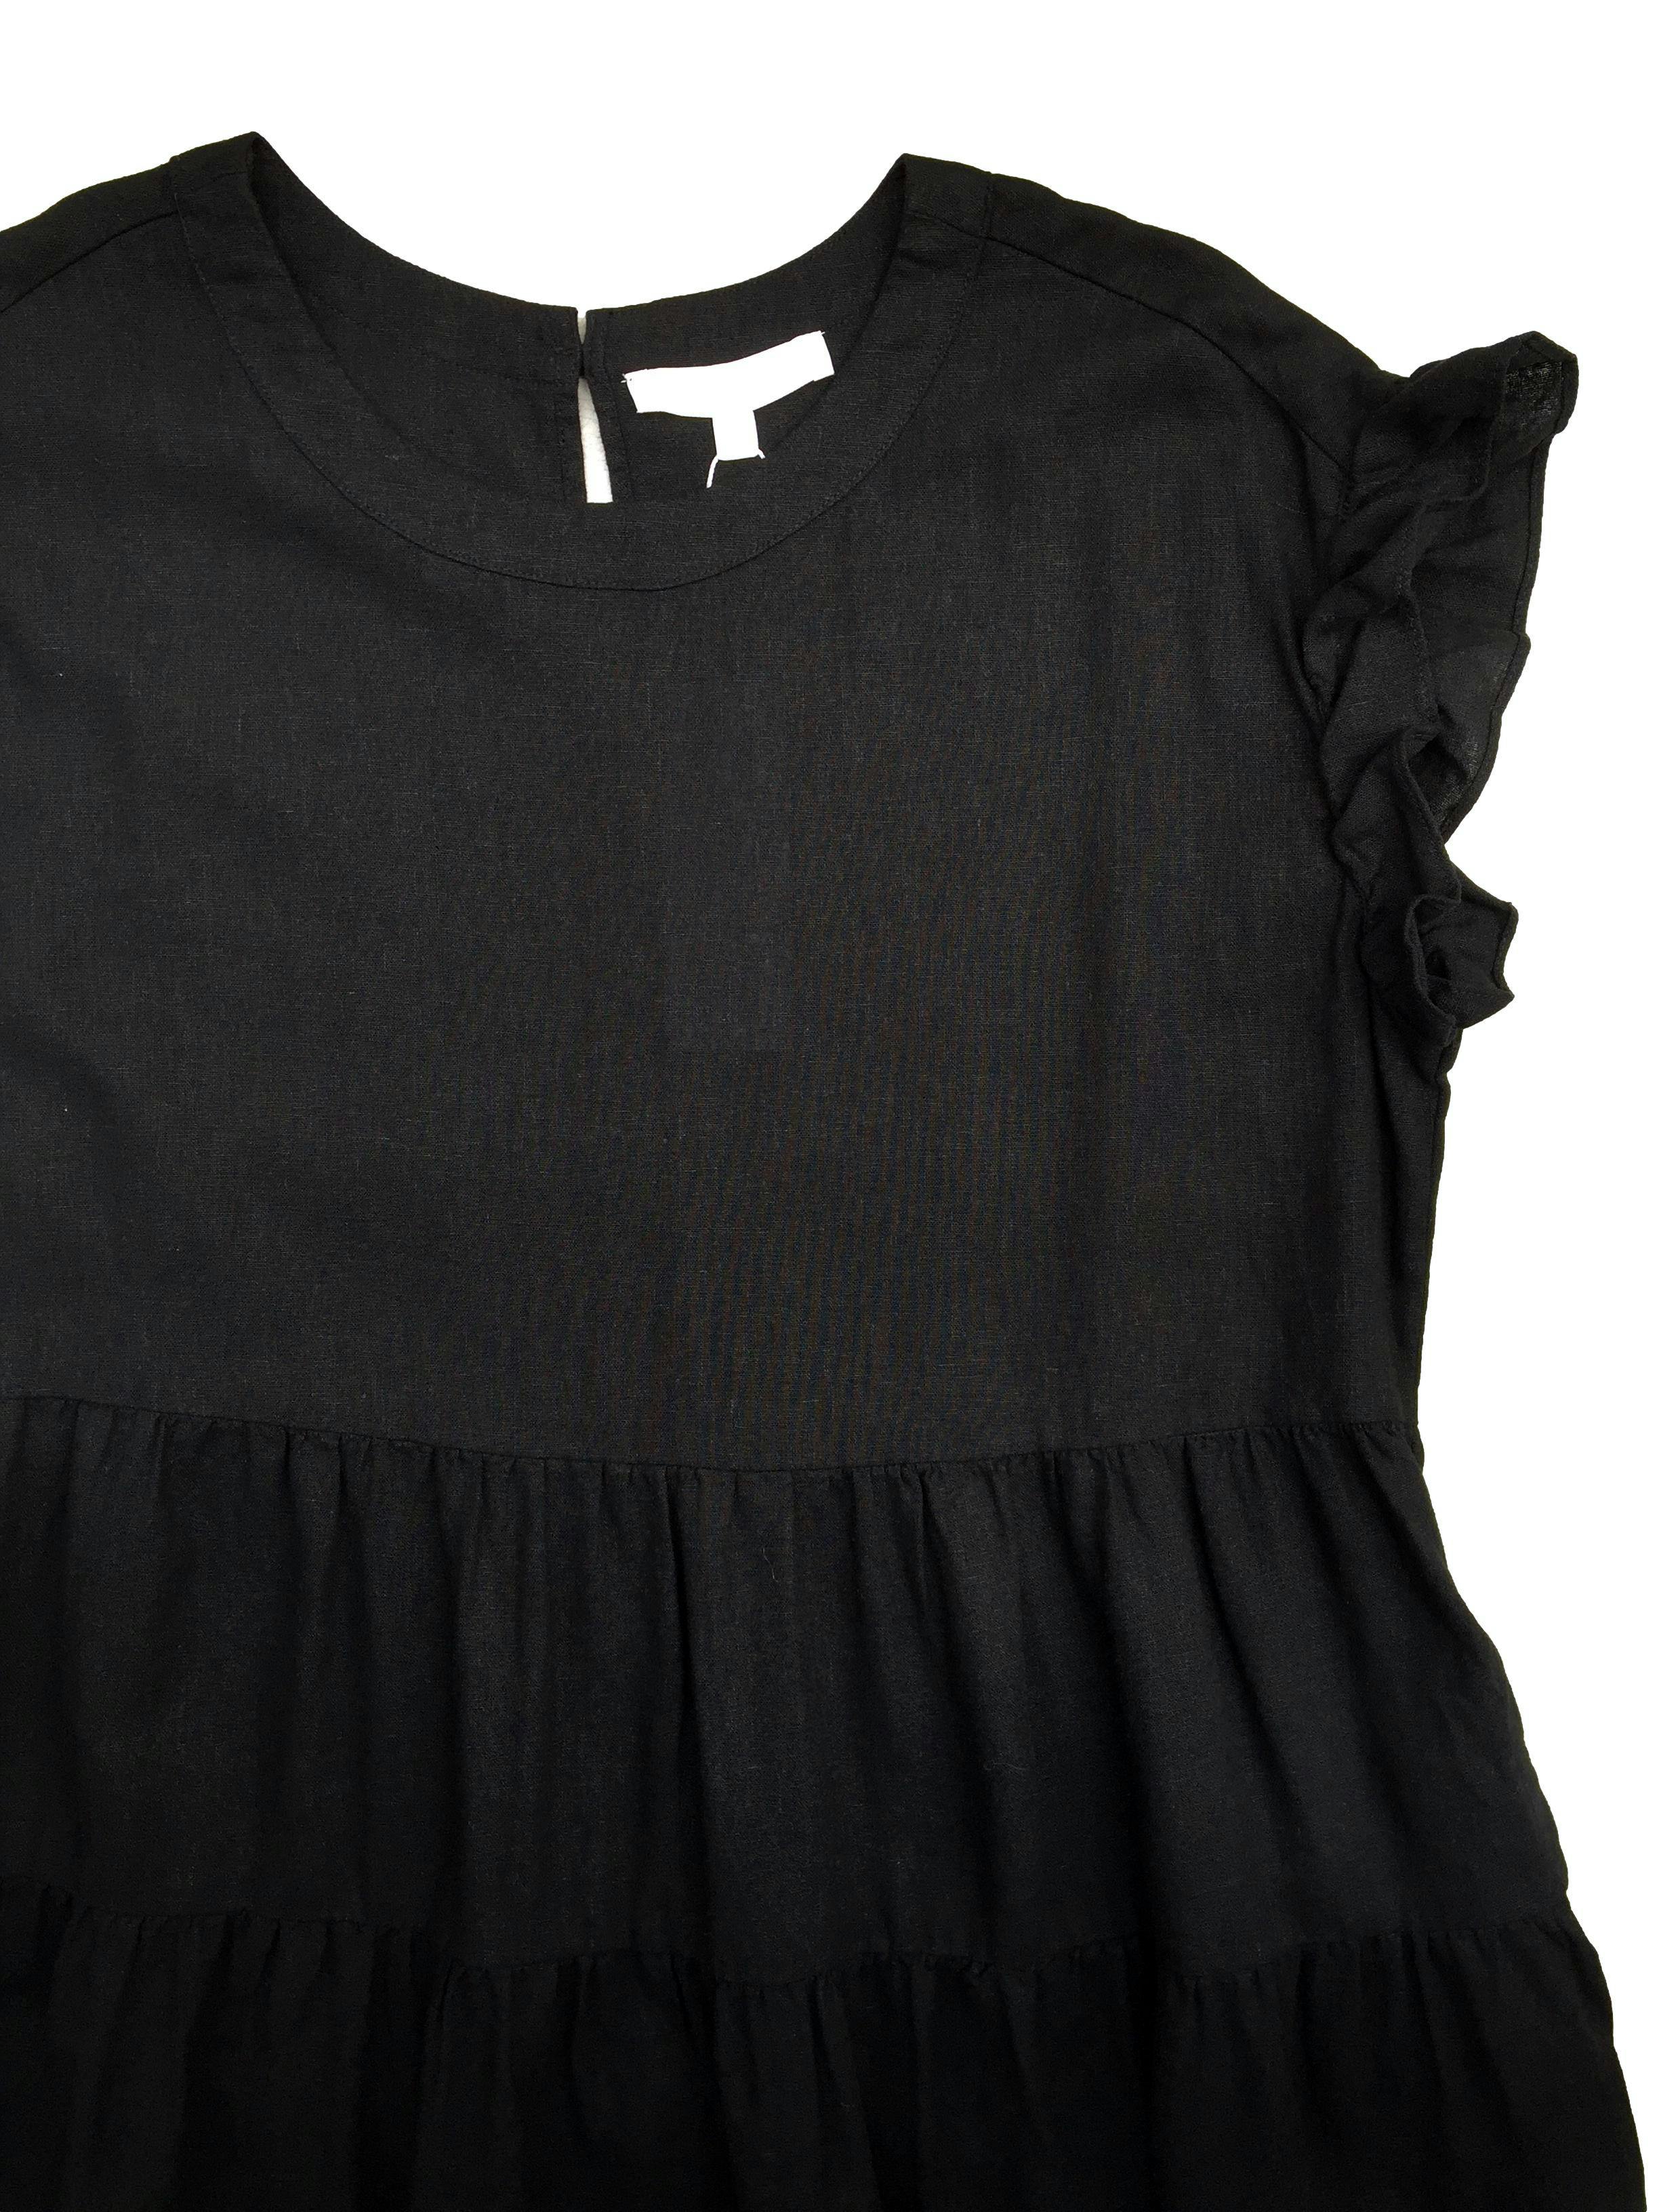 Vestido Adyson Parker negro mezcla de lino y algodón con falda en tiempos. Busto 112cm Largo 90cm. Nuevo con etiqueta